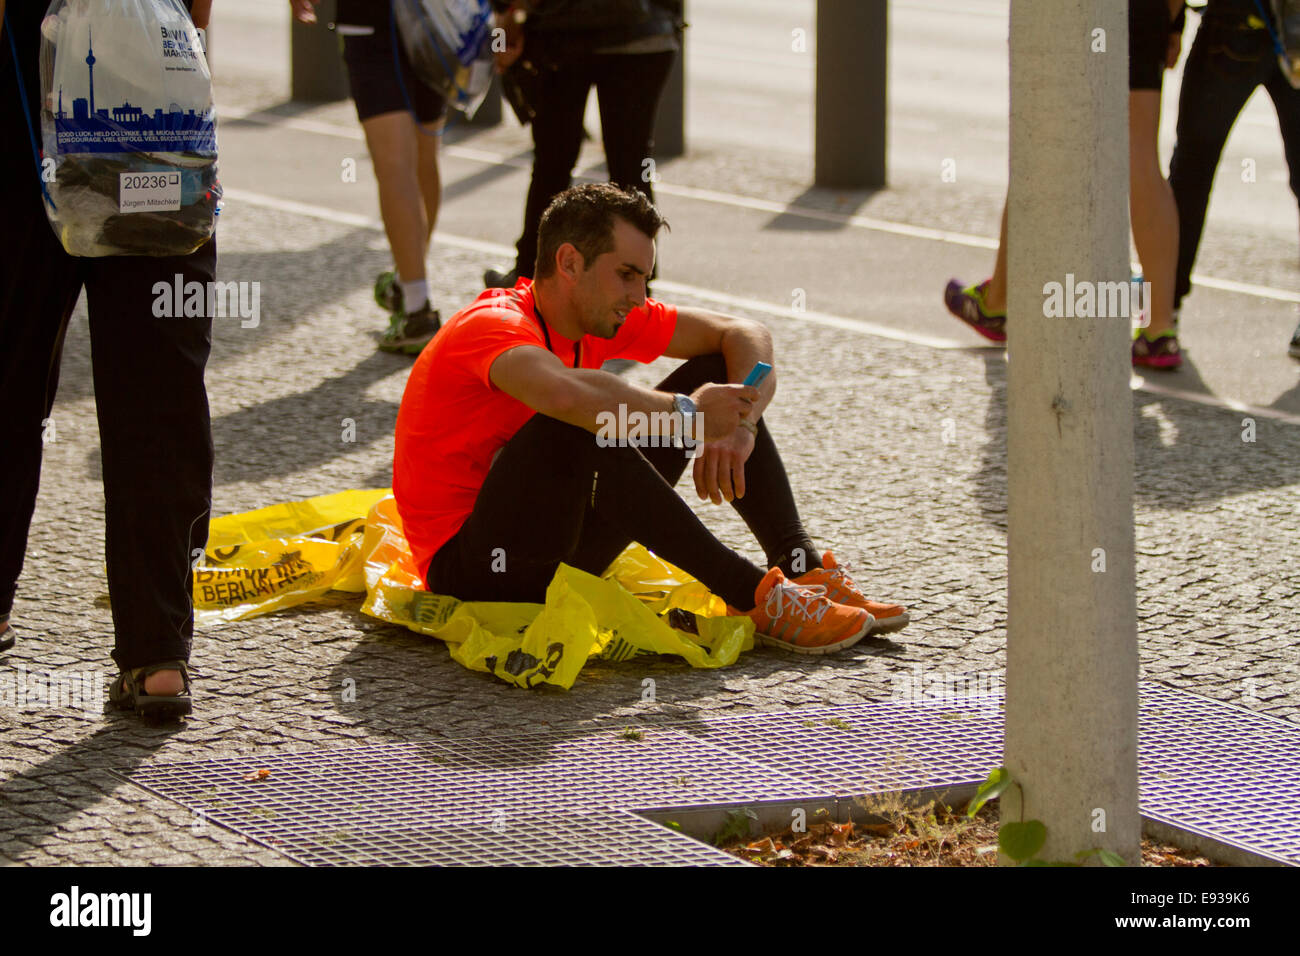 Marathon runner sat on floor with people walking Stock Photo